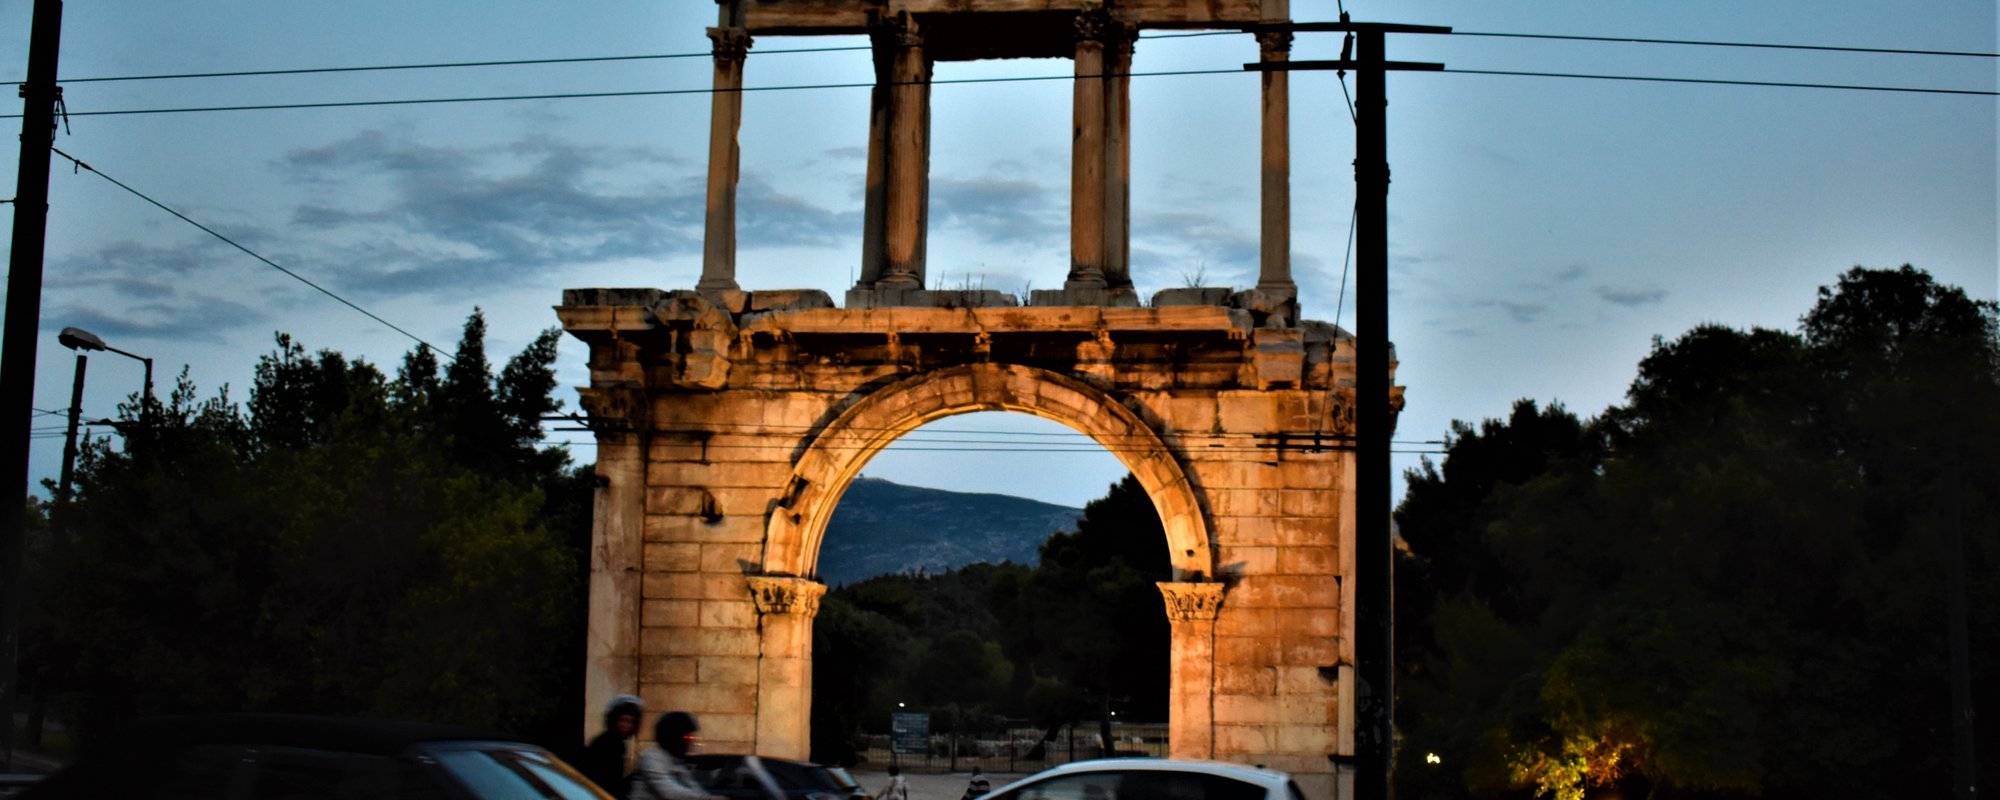 Mypictureday : An evening walk at Dionysiou Aeropagitou street in Athens!